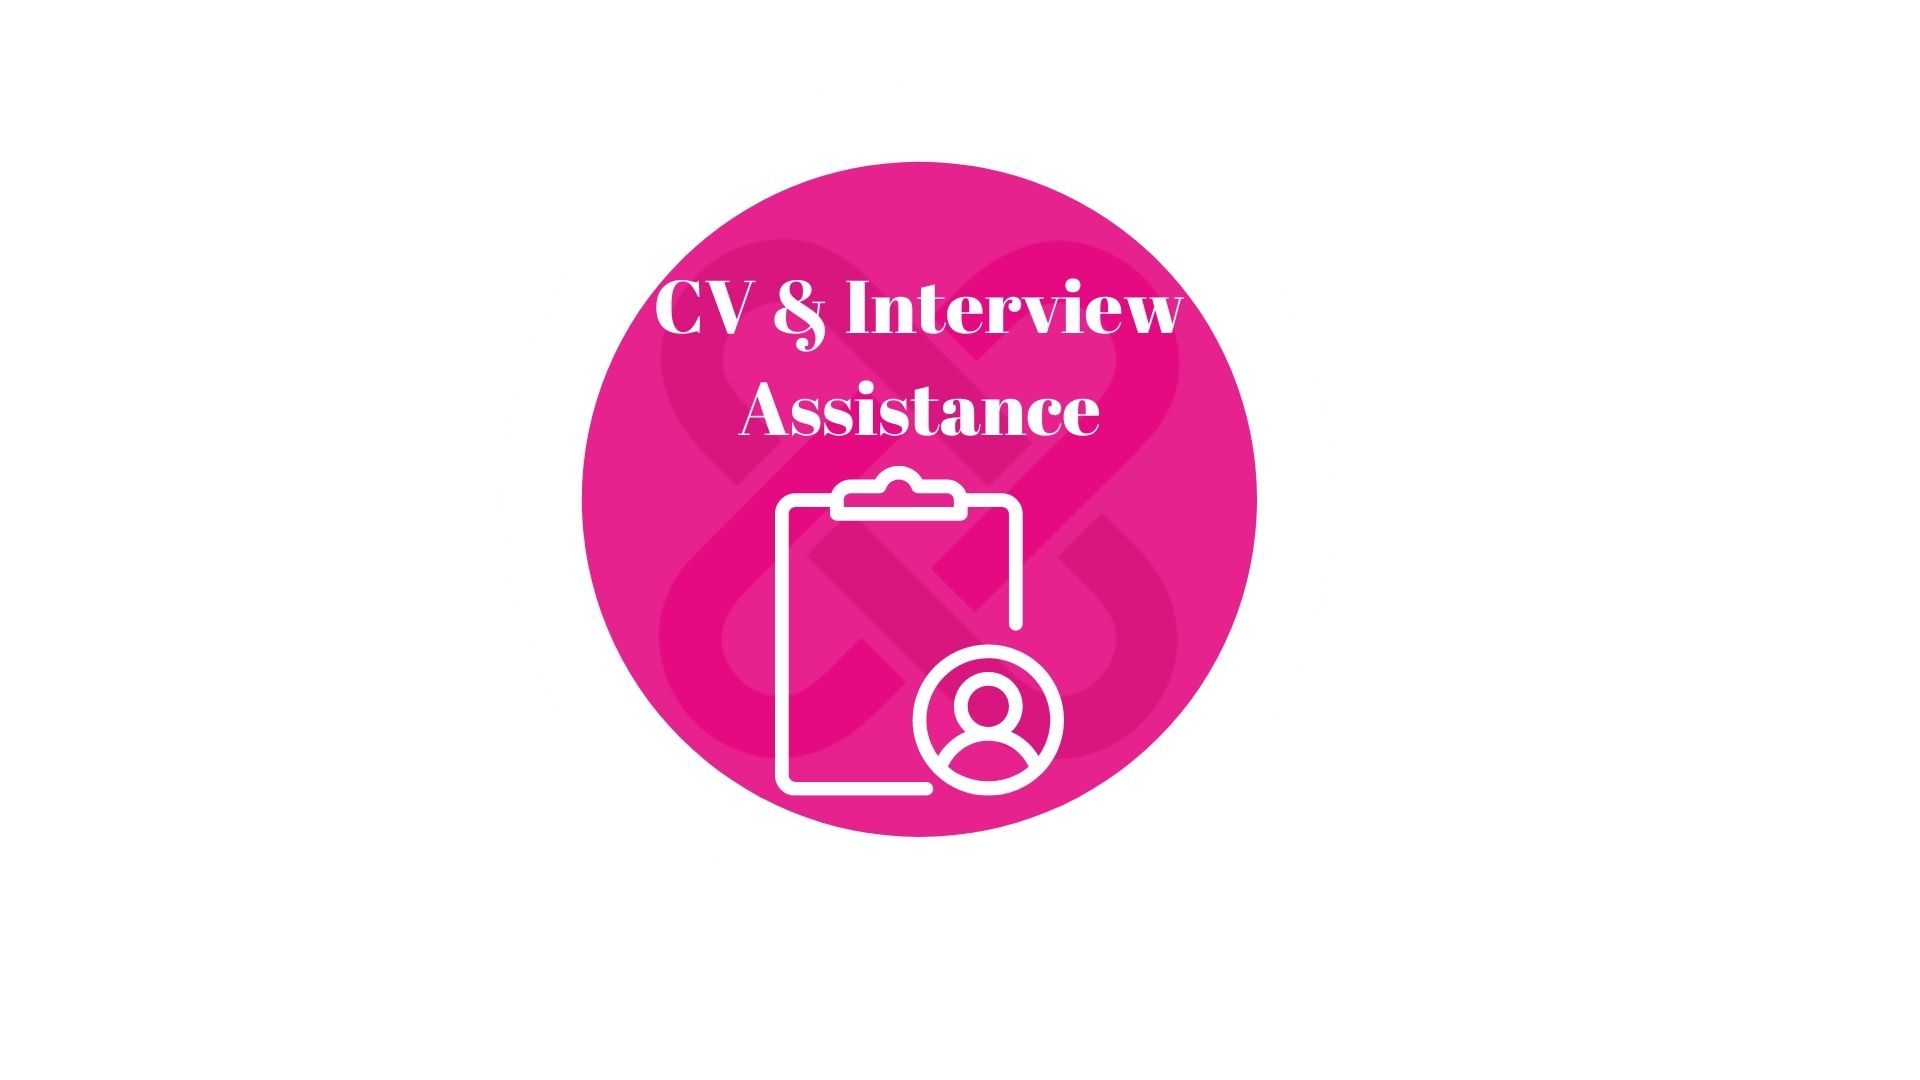 CV & Interview Assistance